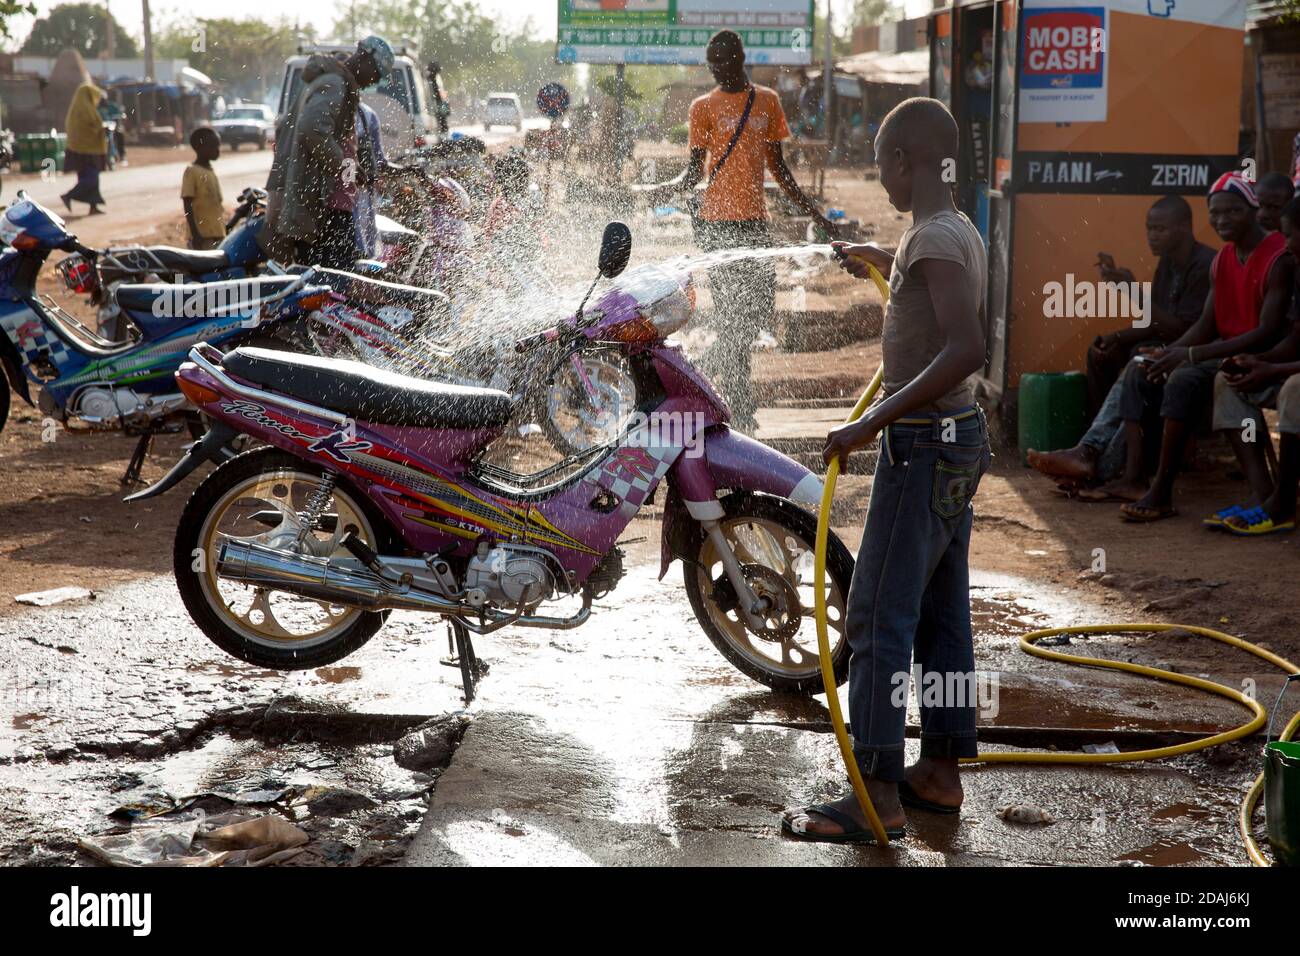 Selingue, Mali, 25. April 2015; Tiema Tounkara, 14, und Afon Troure, 19, putzen Motorräder, beide arbeiten für ihren Vater. Tiema geht zur Schule und arbeitet am Nachmittag. Afon verließ letztes Jahr die Schule. Sie berechnen 250 CFA, um jedes Fahrrad zu reinigen, und reinigen etwa 15 Fahrräder pro Tag zwischen ihnen. Stockfoto